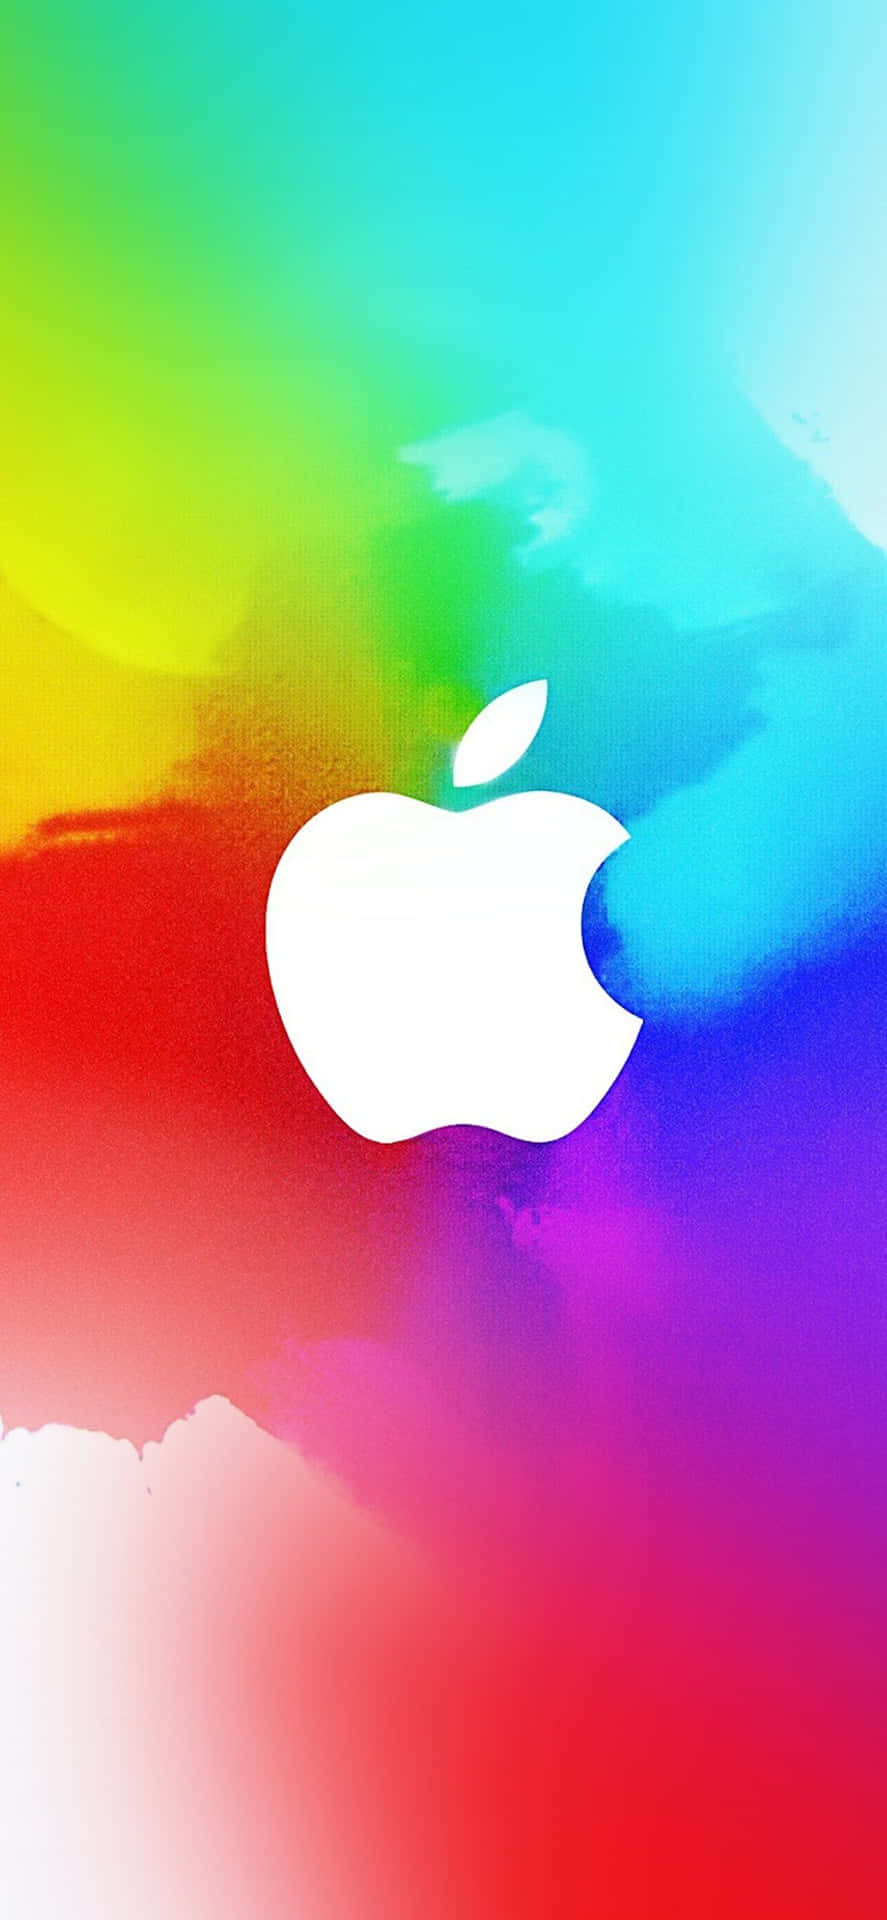 Apple Logo on an Iphone X Wallpaper